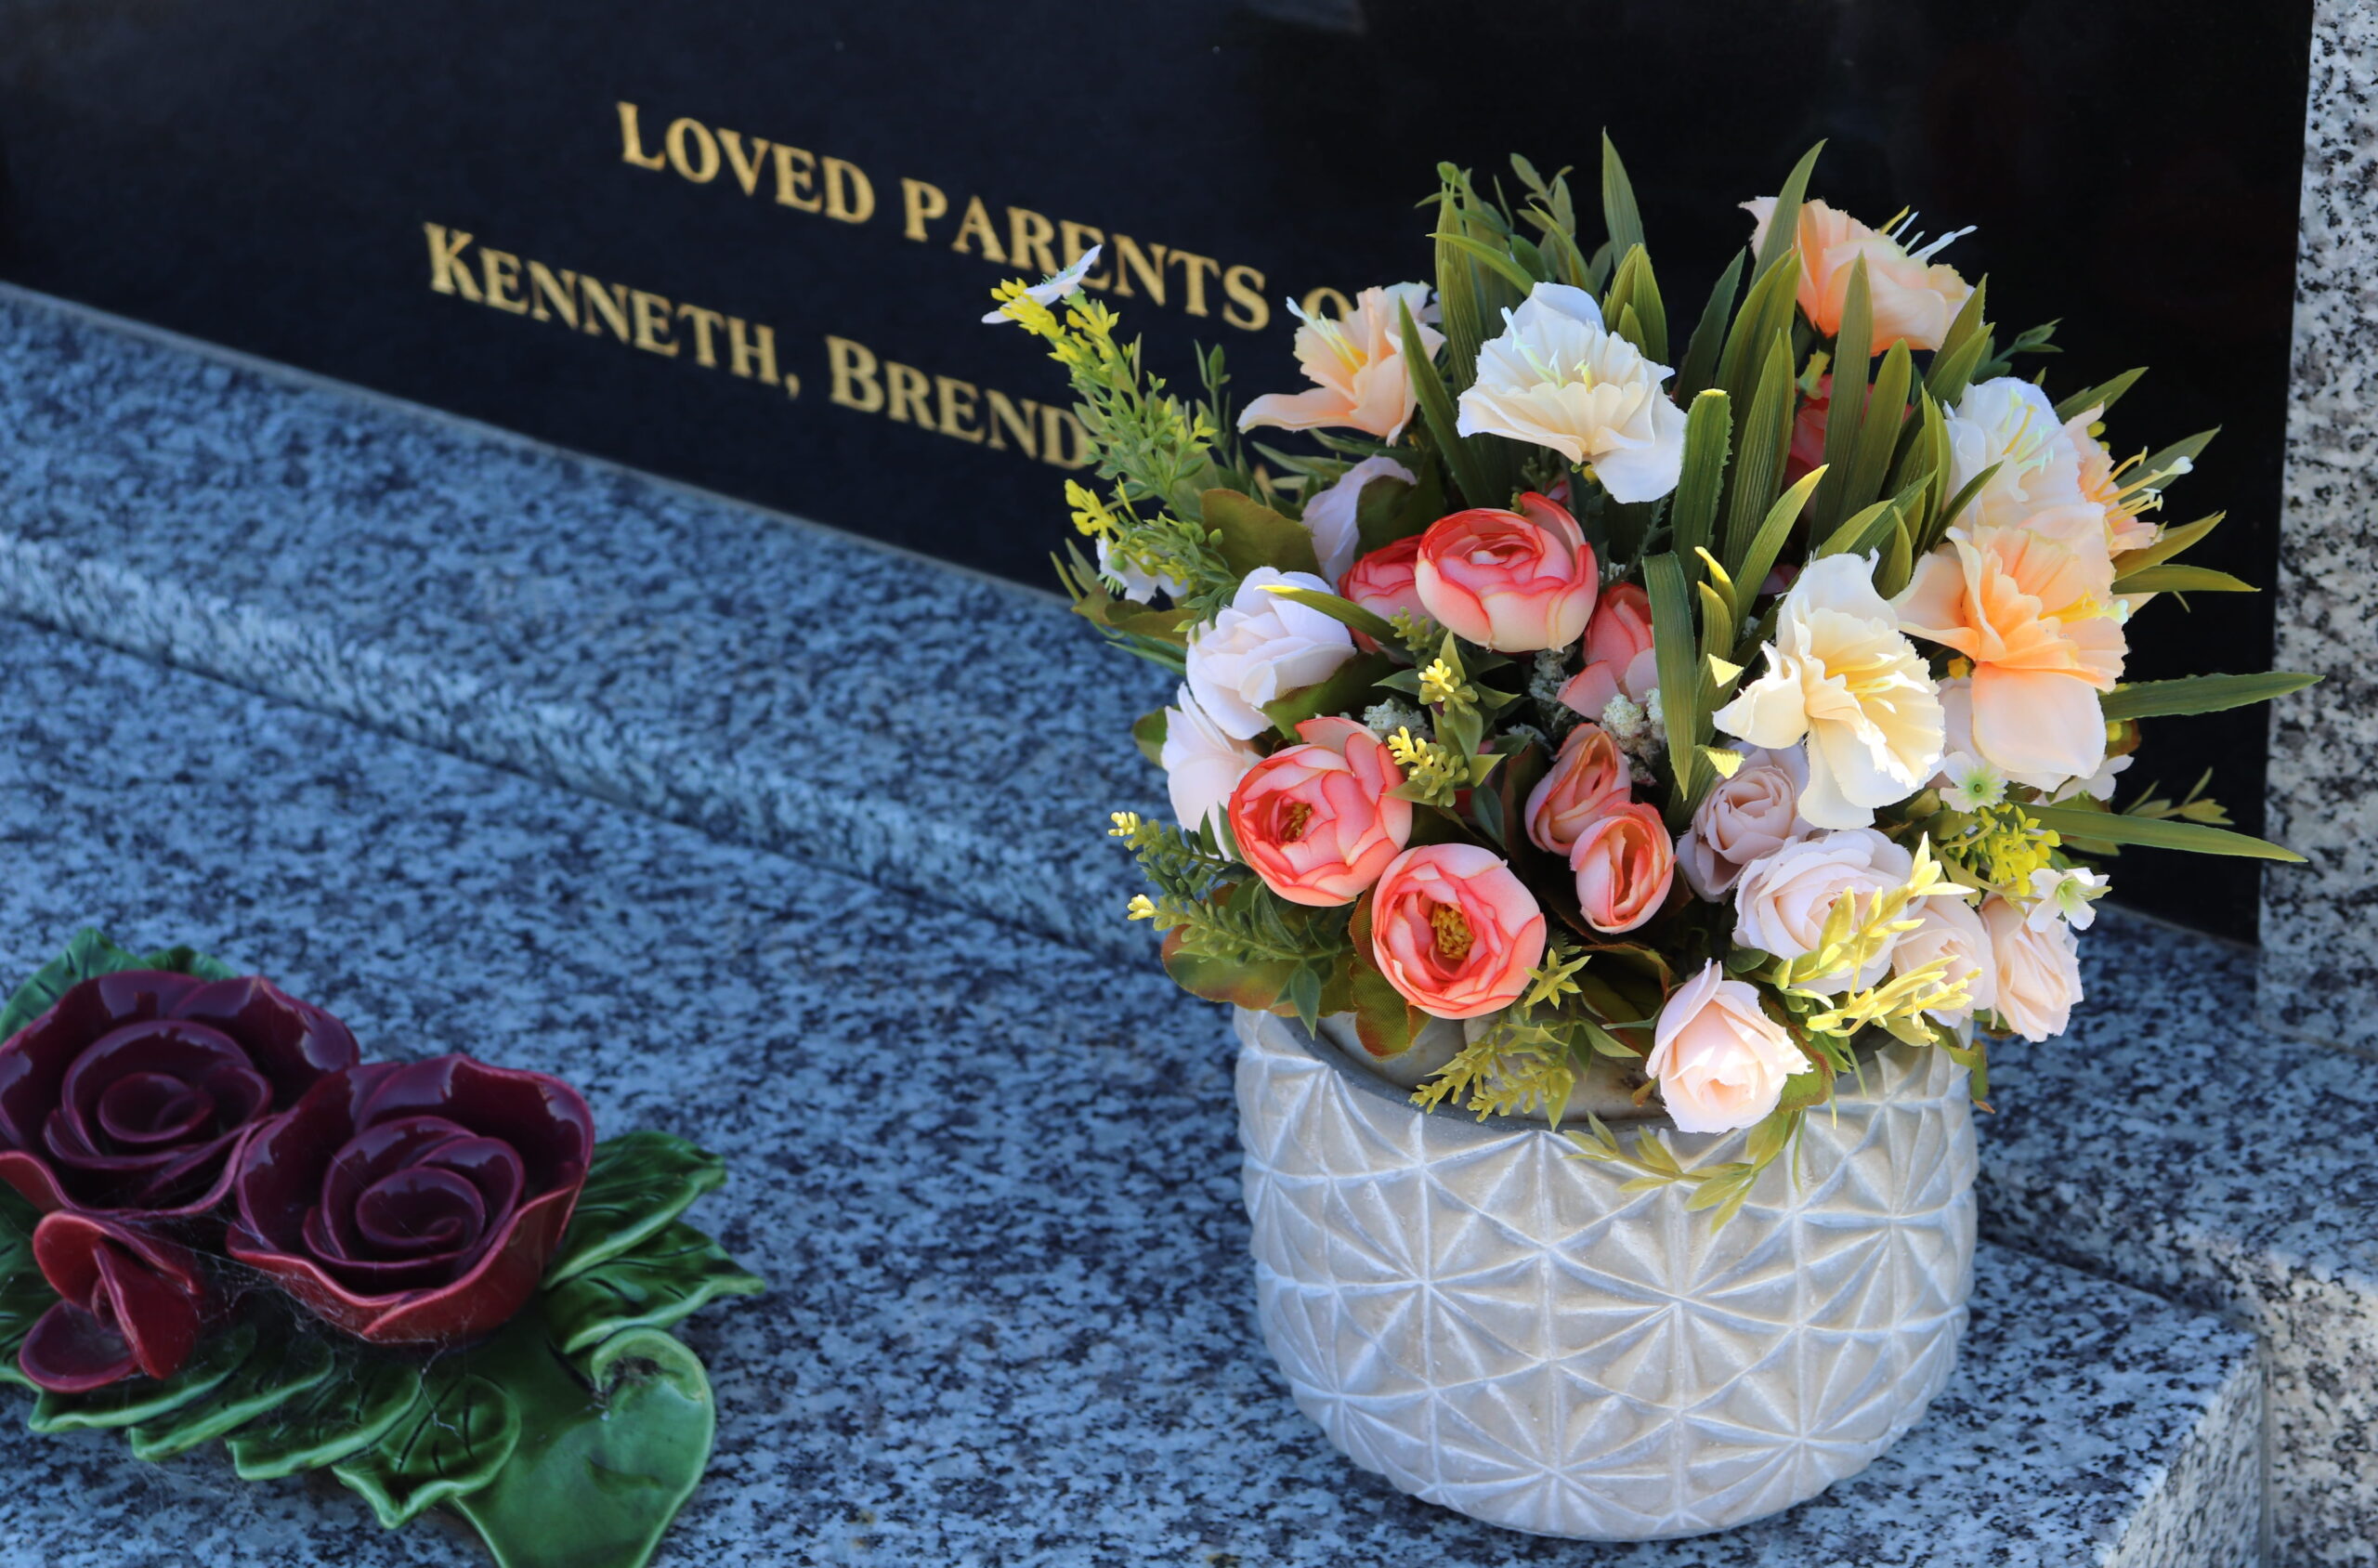 Вайлдберриз искусственные цветы для кладбища